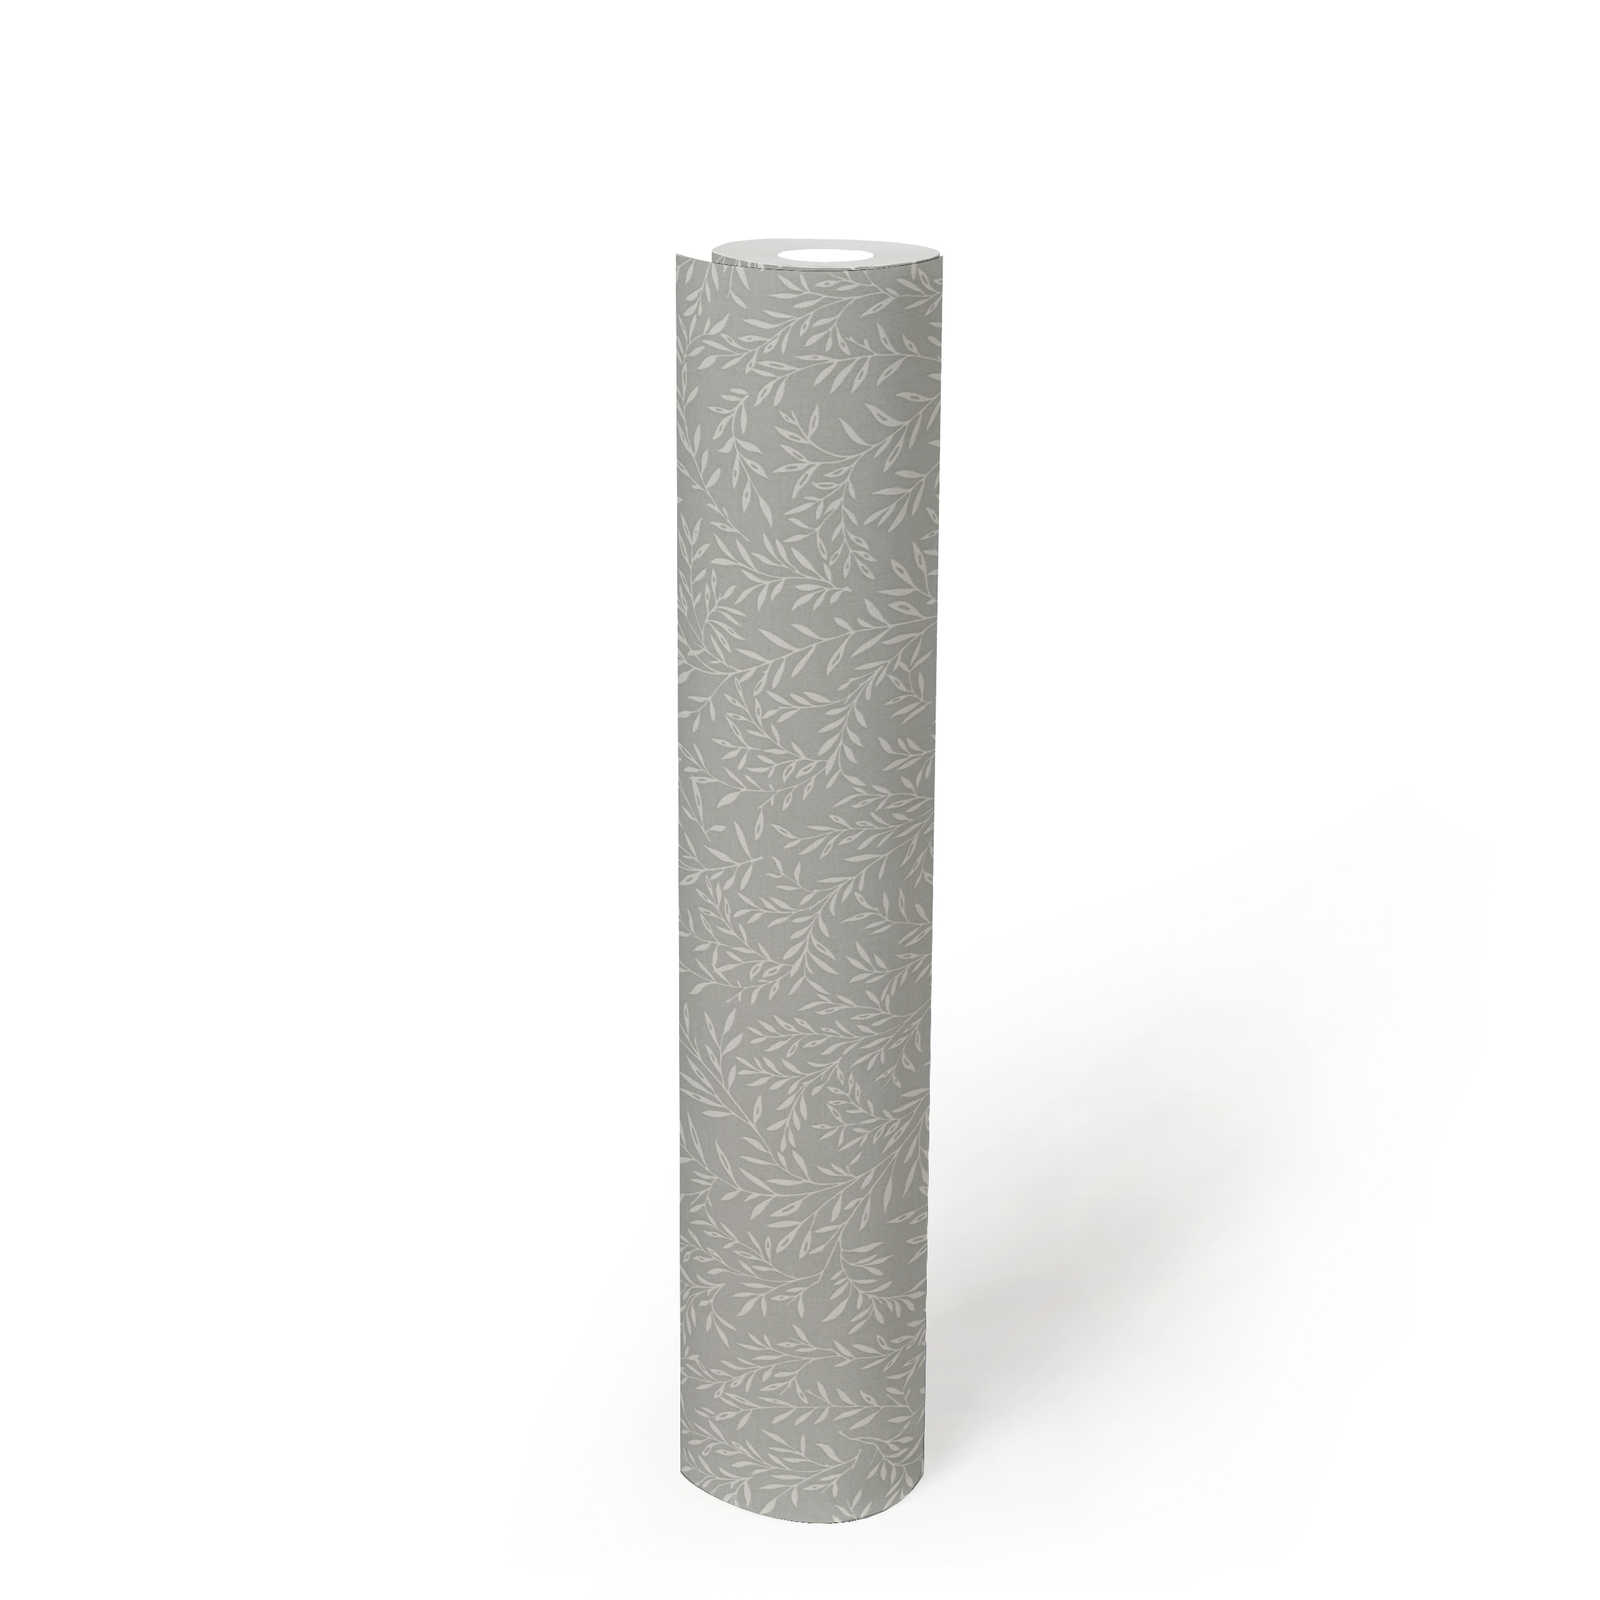             Onderlaag behang met bladranken in landelijke stijl - grijs, wit
        